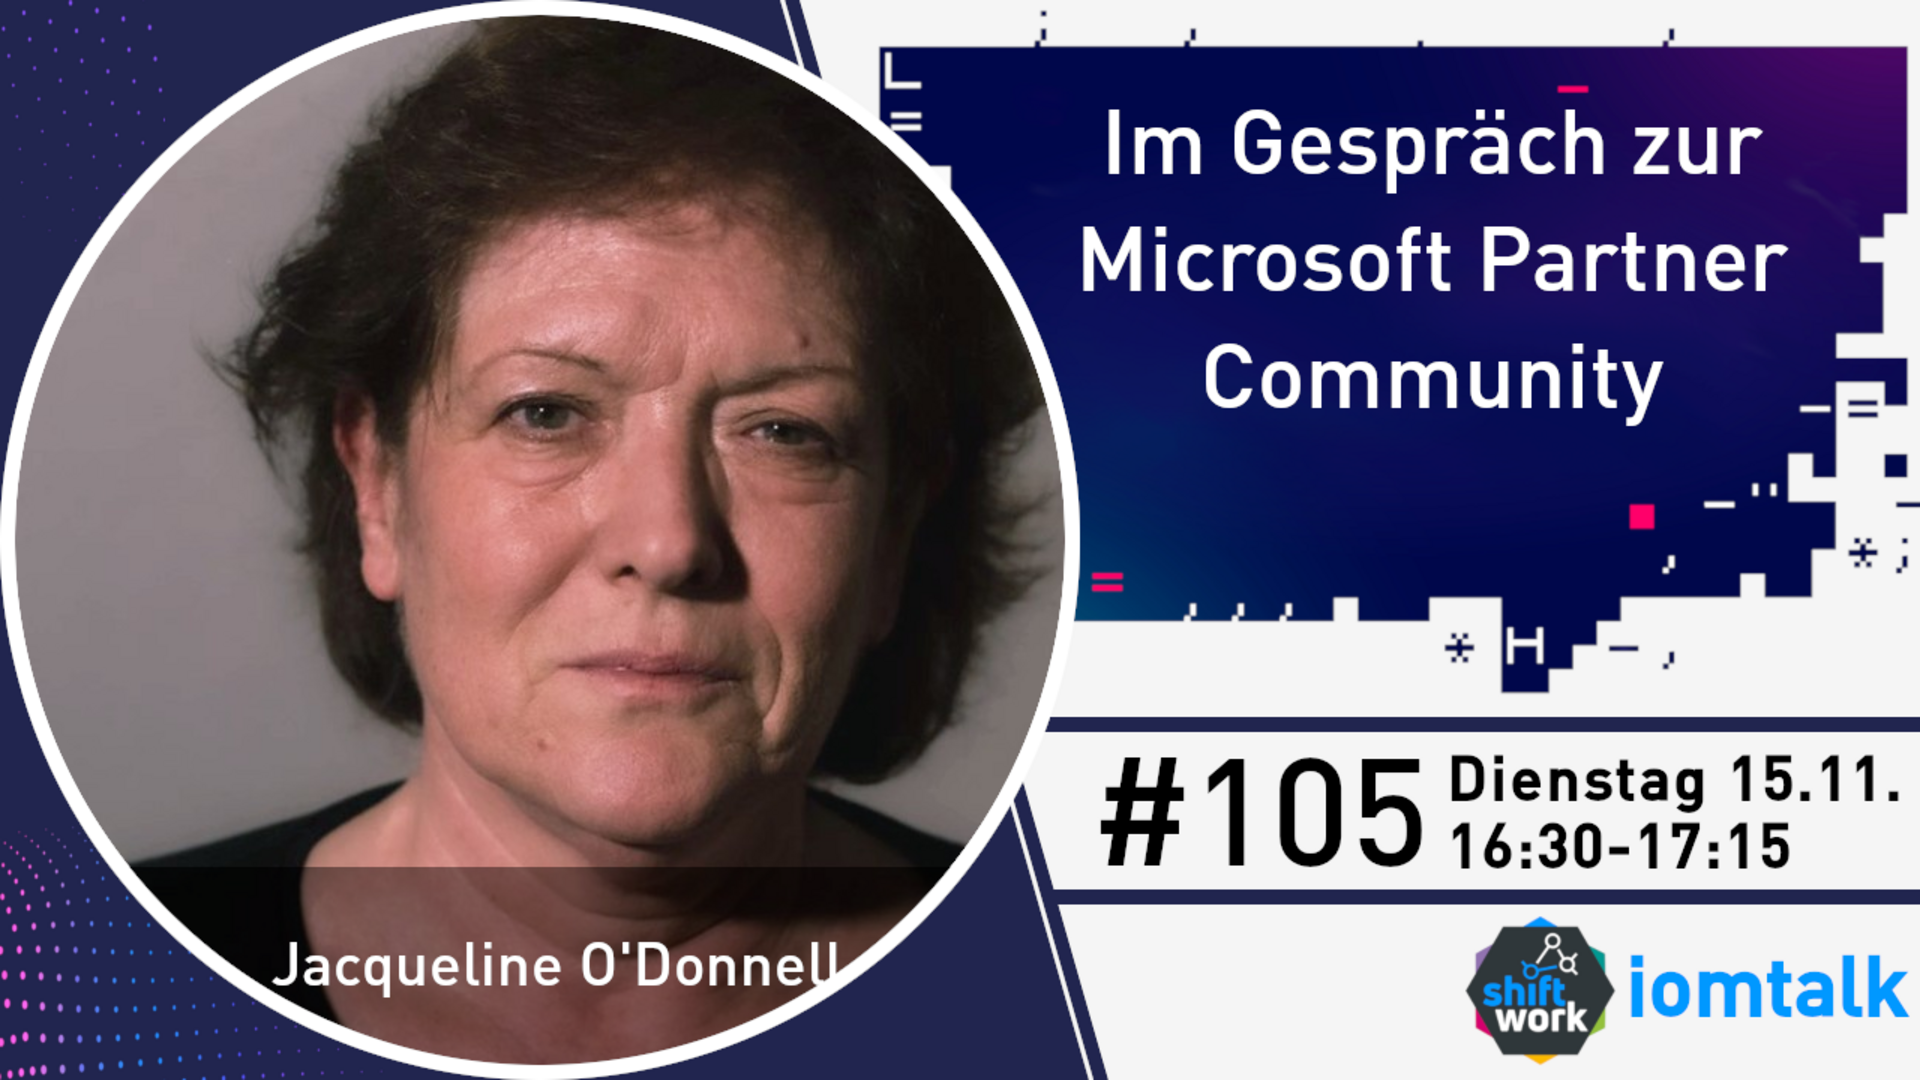 Im Gespräch mit Jacqueline O'Donnell zur Microsoft Partner Community